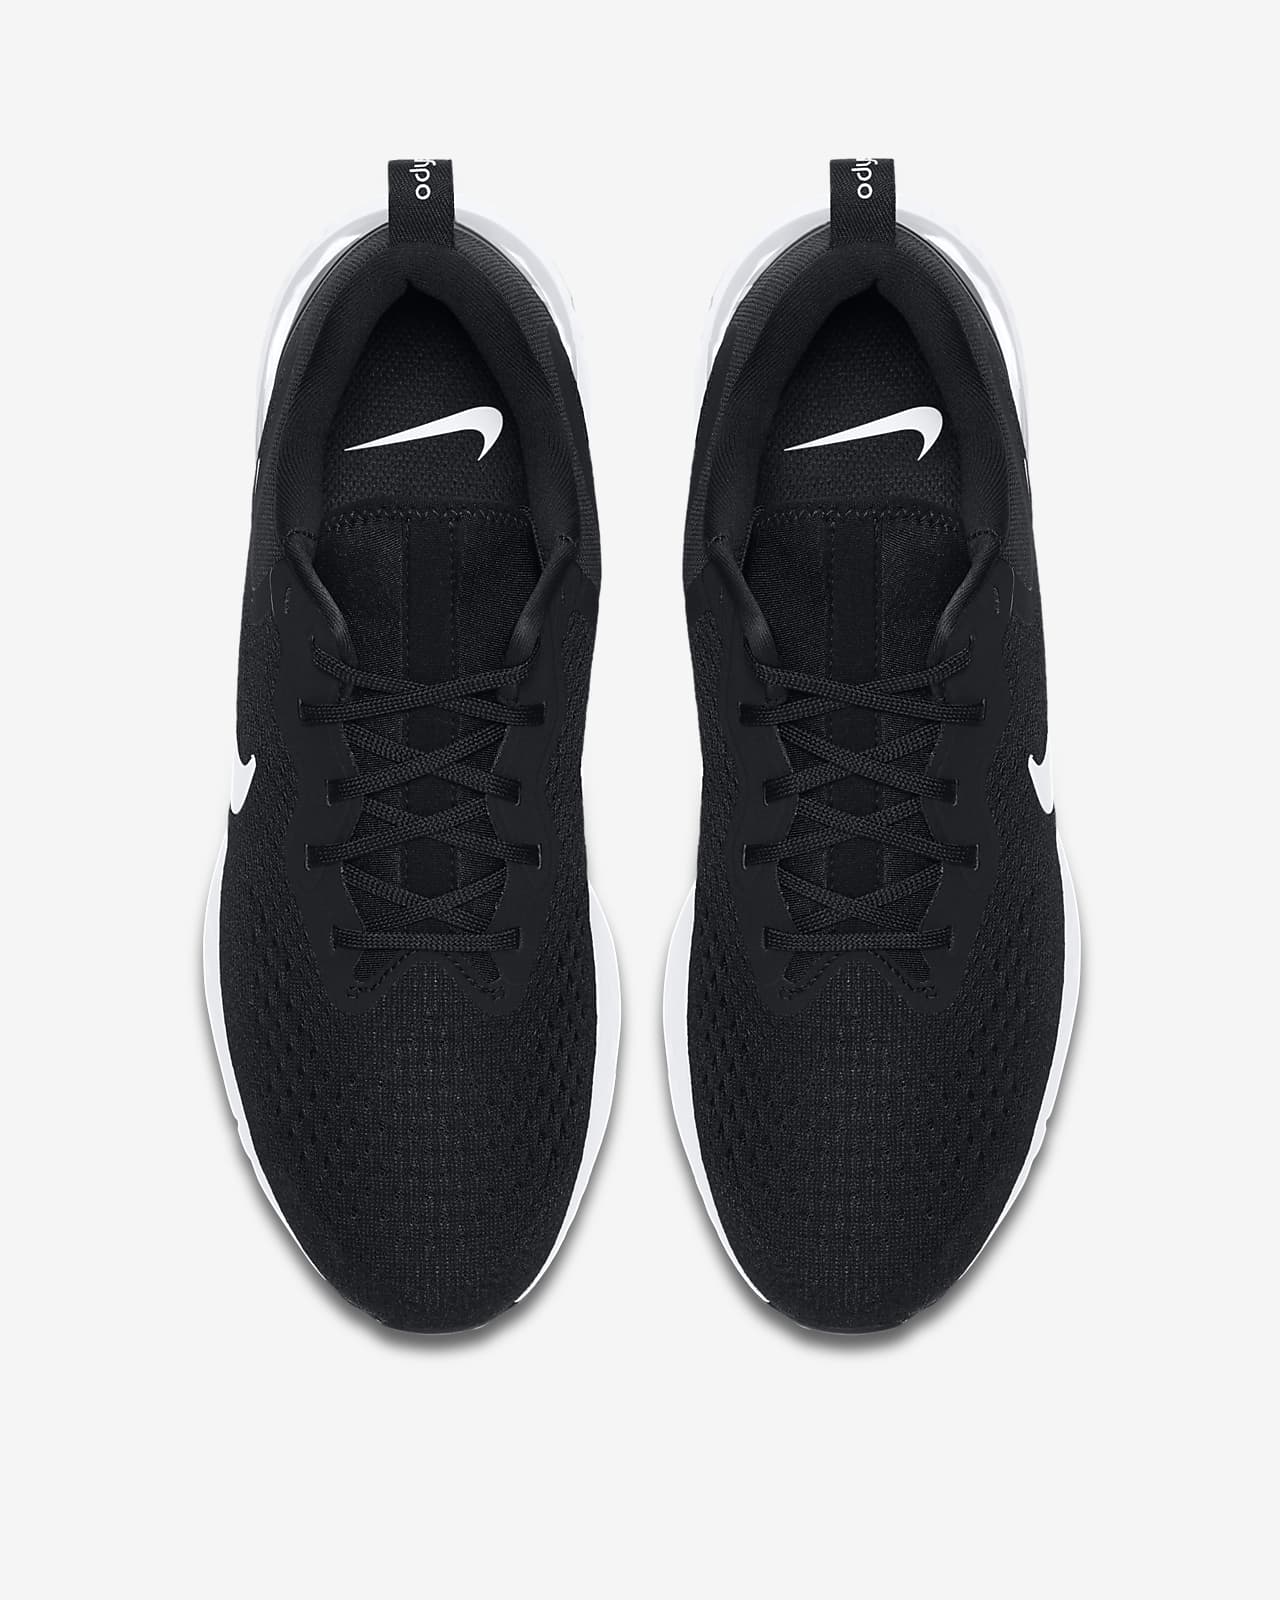 Nike Odyssey React Men's Running Shoe 